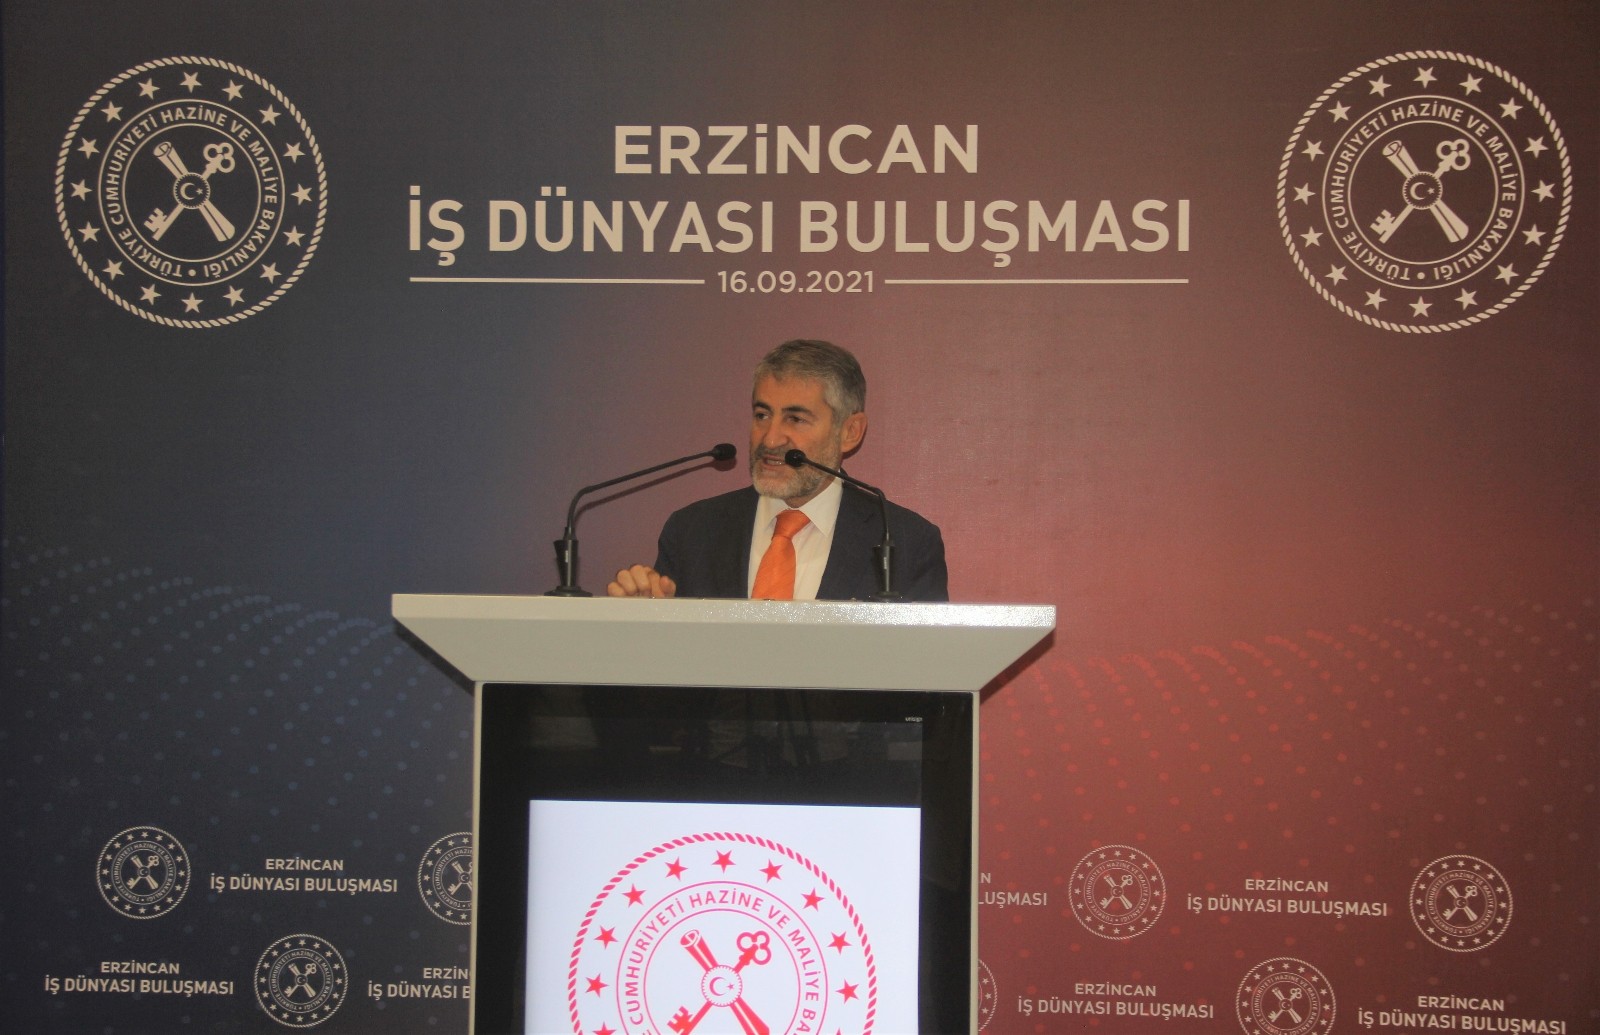 Hazine ve Maliye Bakan Yardımcısı Nebati: “Erzincan Türkiye’nin ortalamasıyla büyüyen bir şehrimiz”